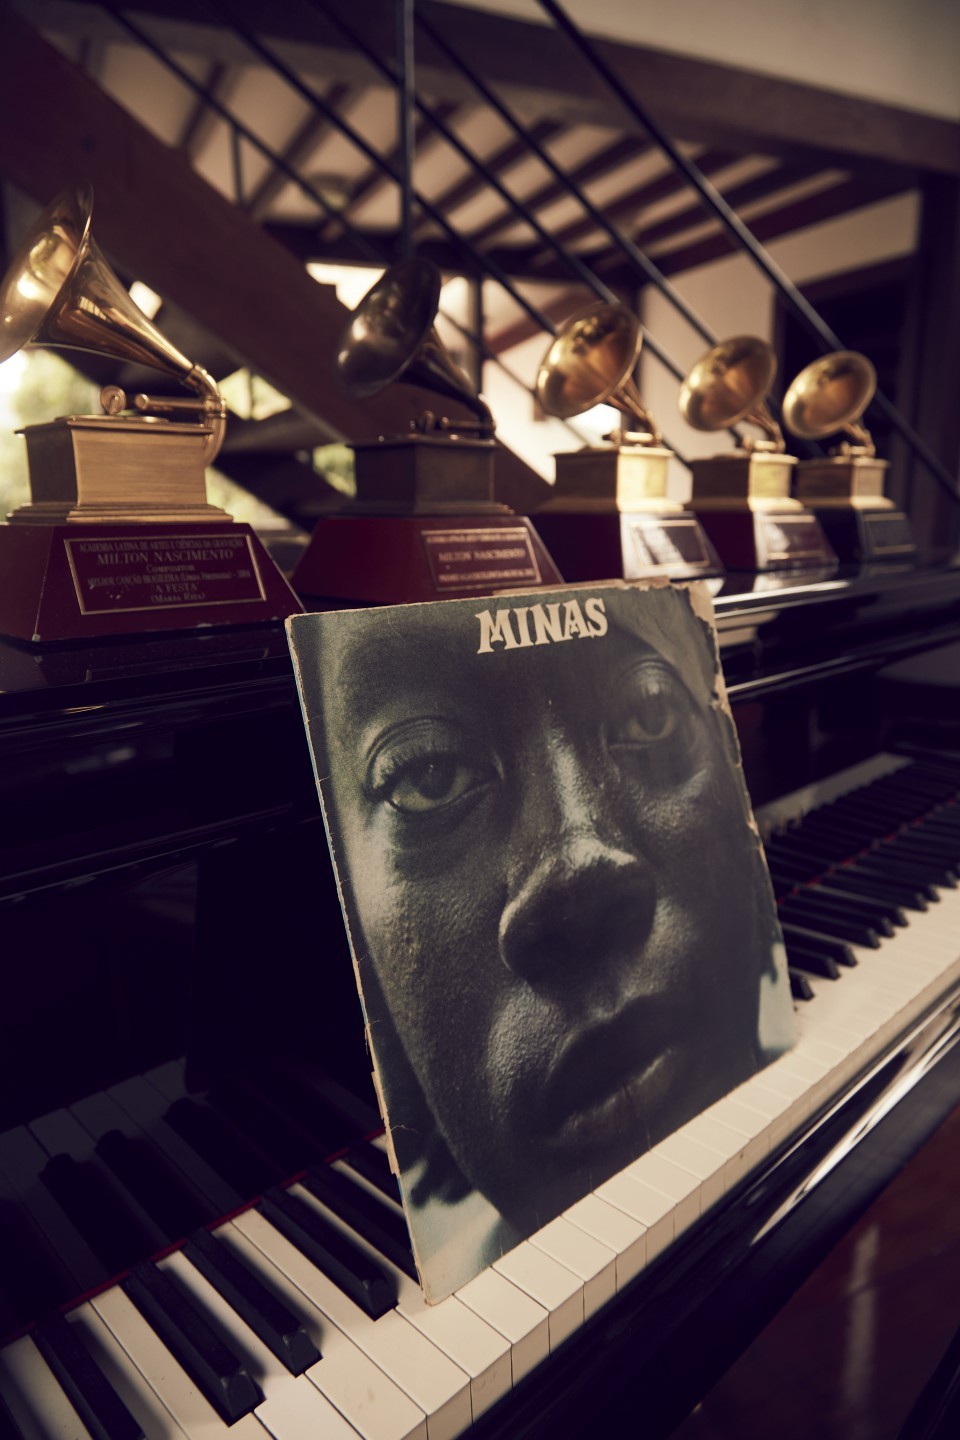 O vinil "Minas" junto a troféus do Grammy